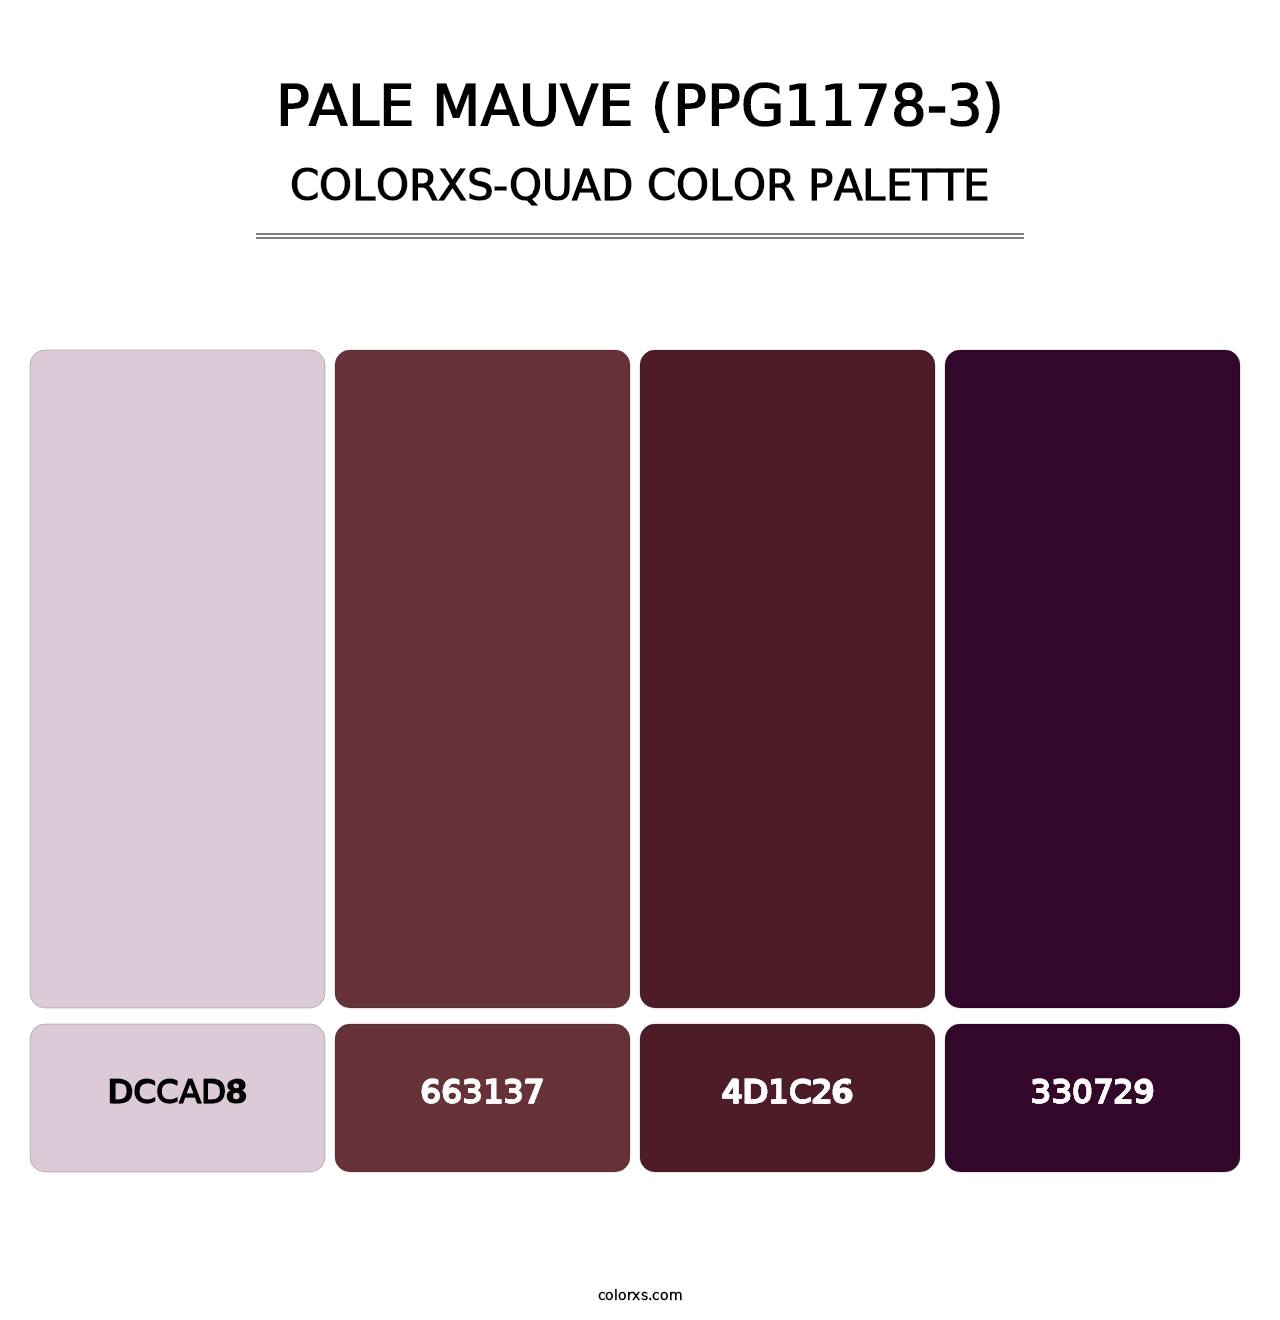 Pale Mauve (PPG1178-3) - Colorxs Quad Palette